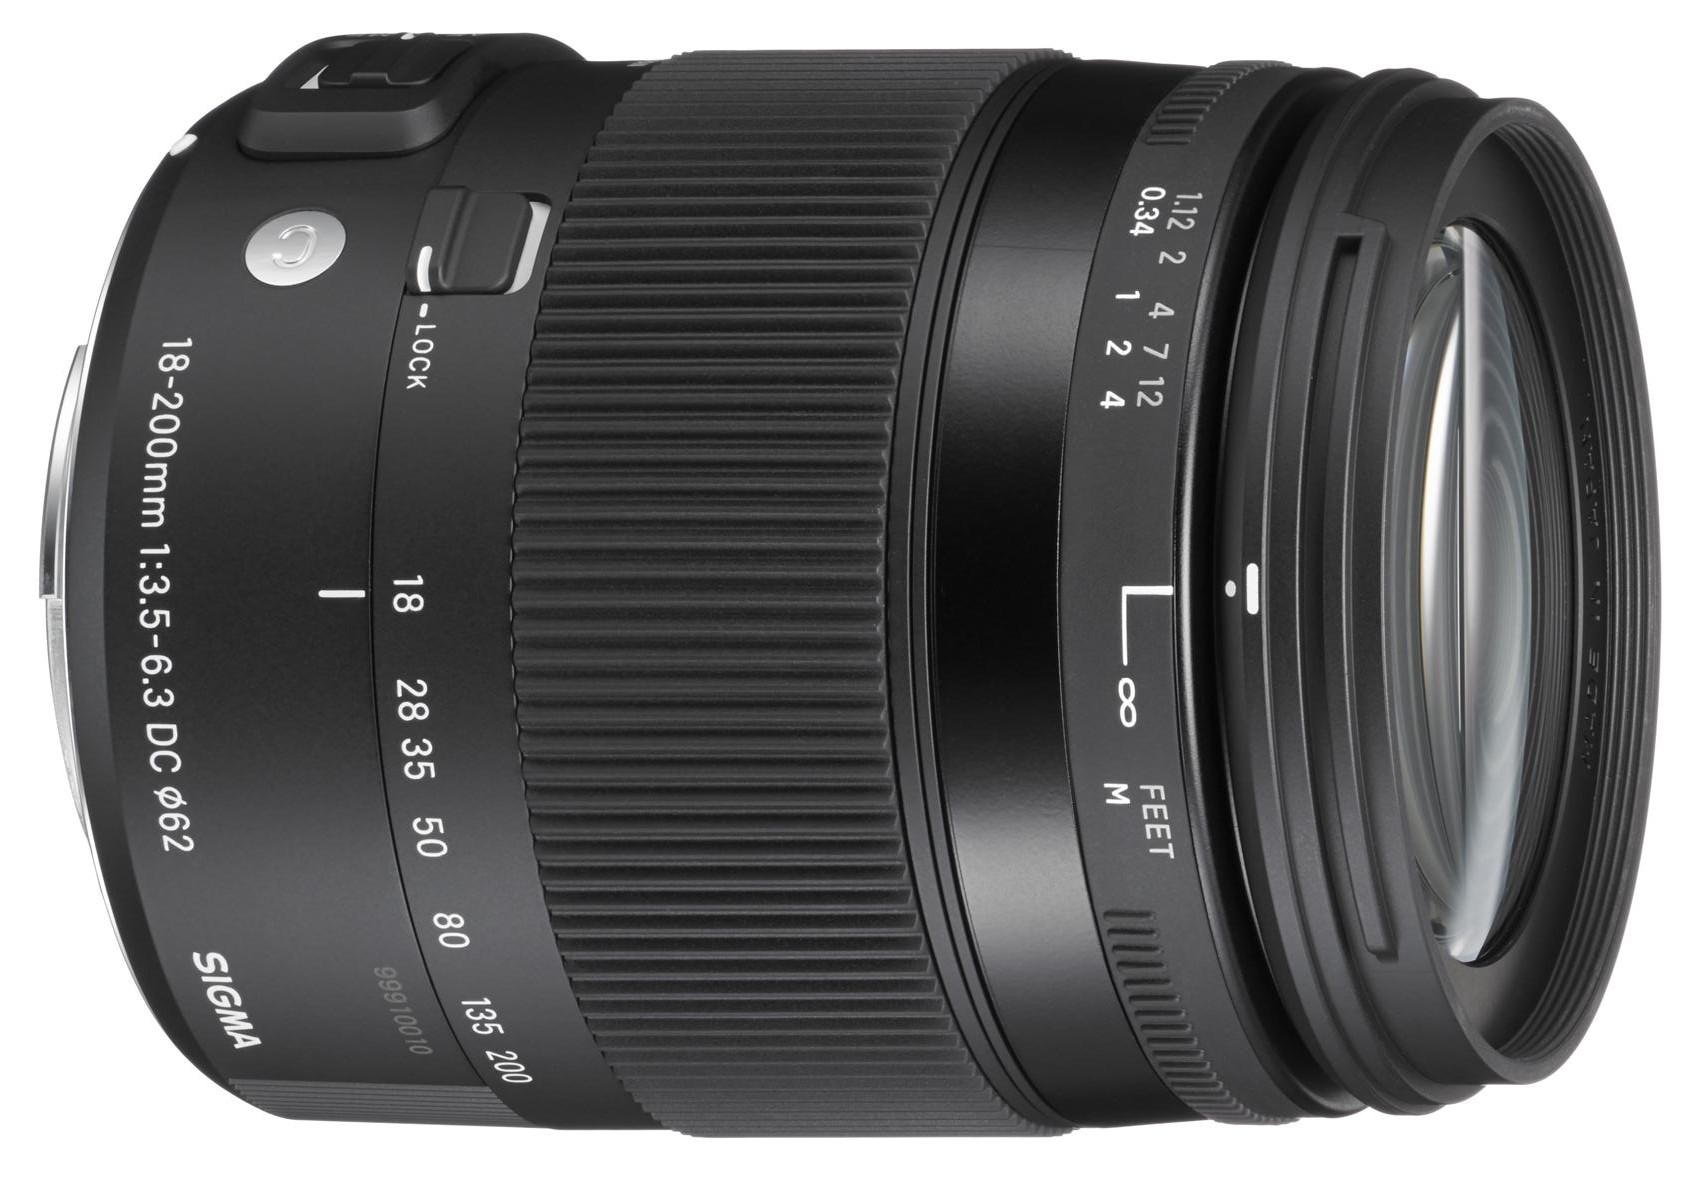 Sigma 18-200mm F3.5-6.3 DC Macro OS HSM Contemporary Lens | Digital